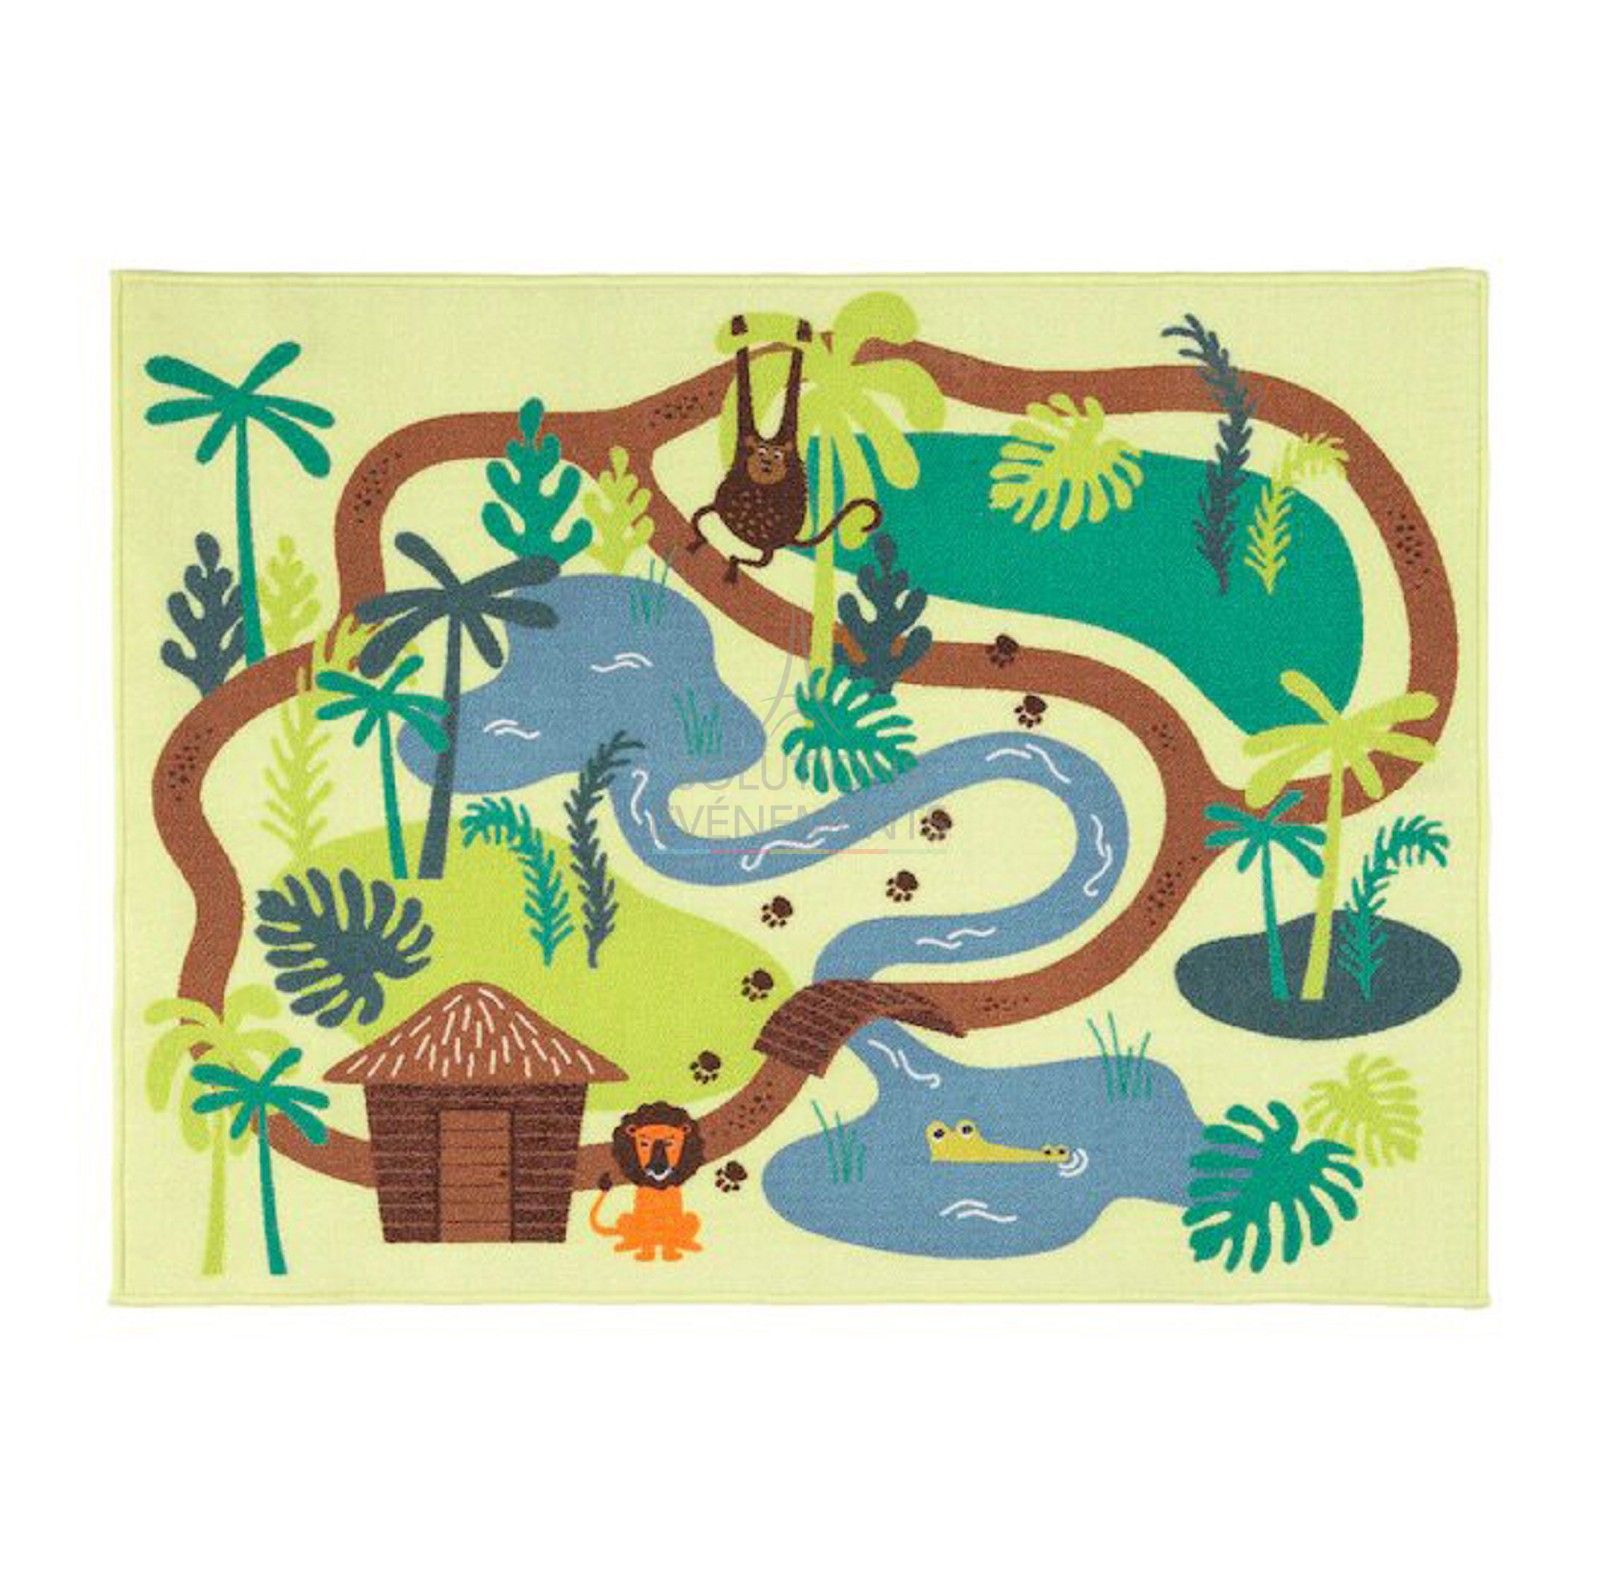 Location de tapis décoratif thème jungle